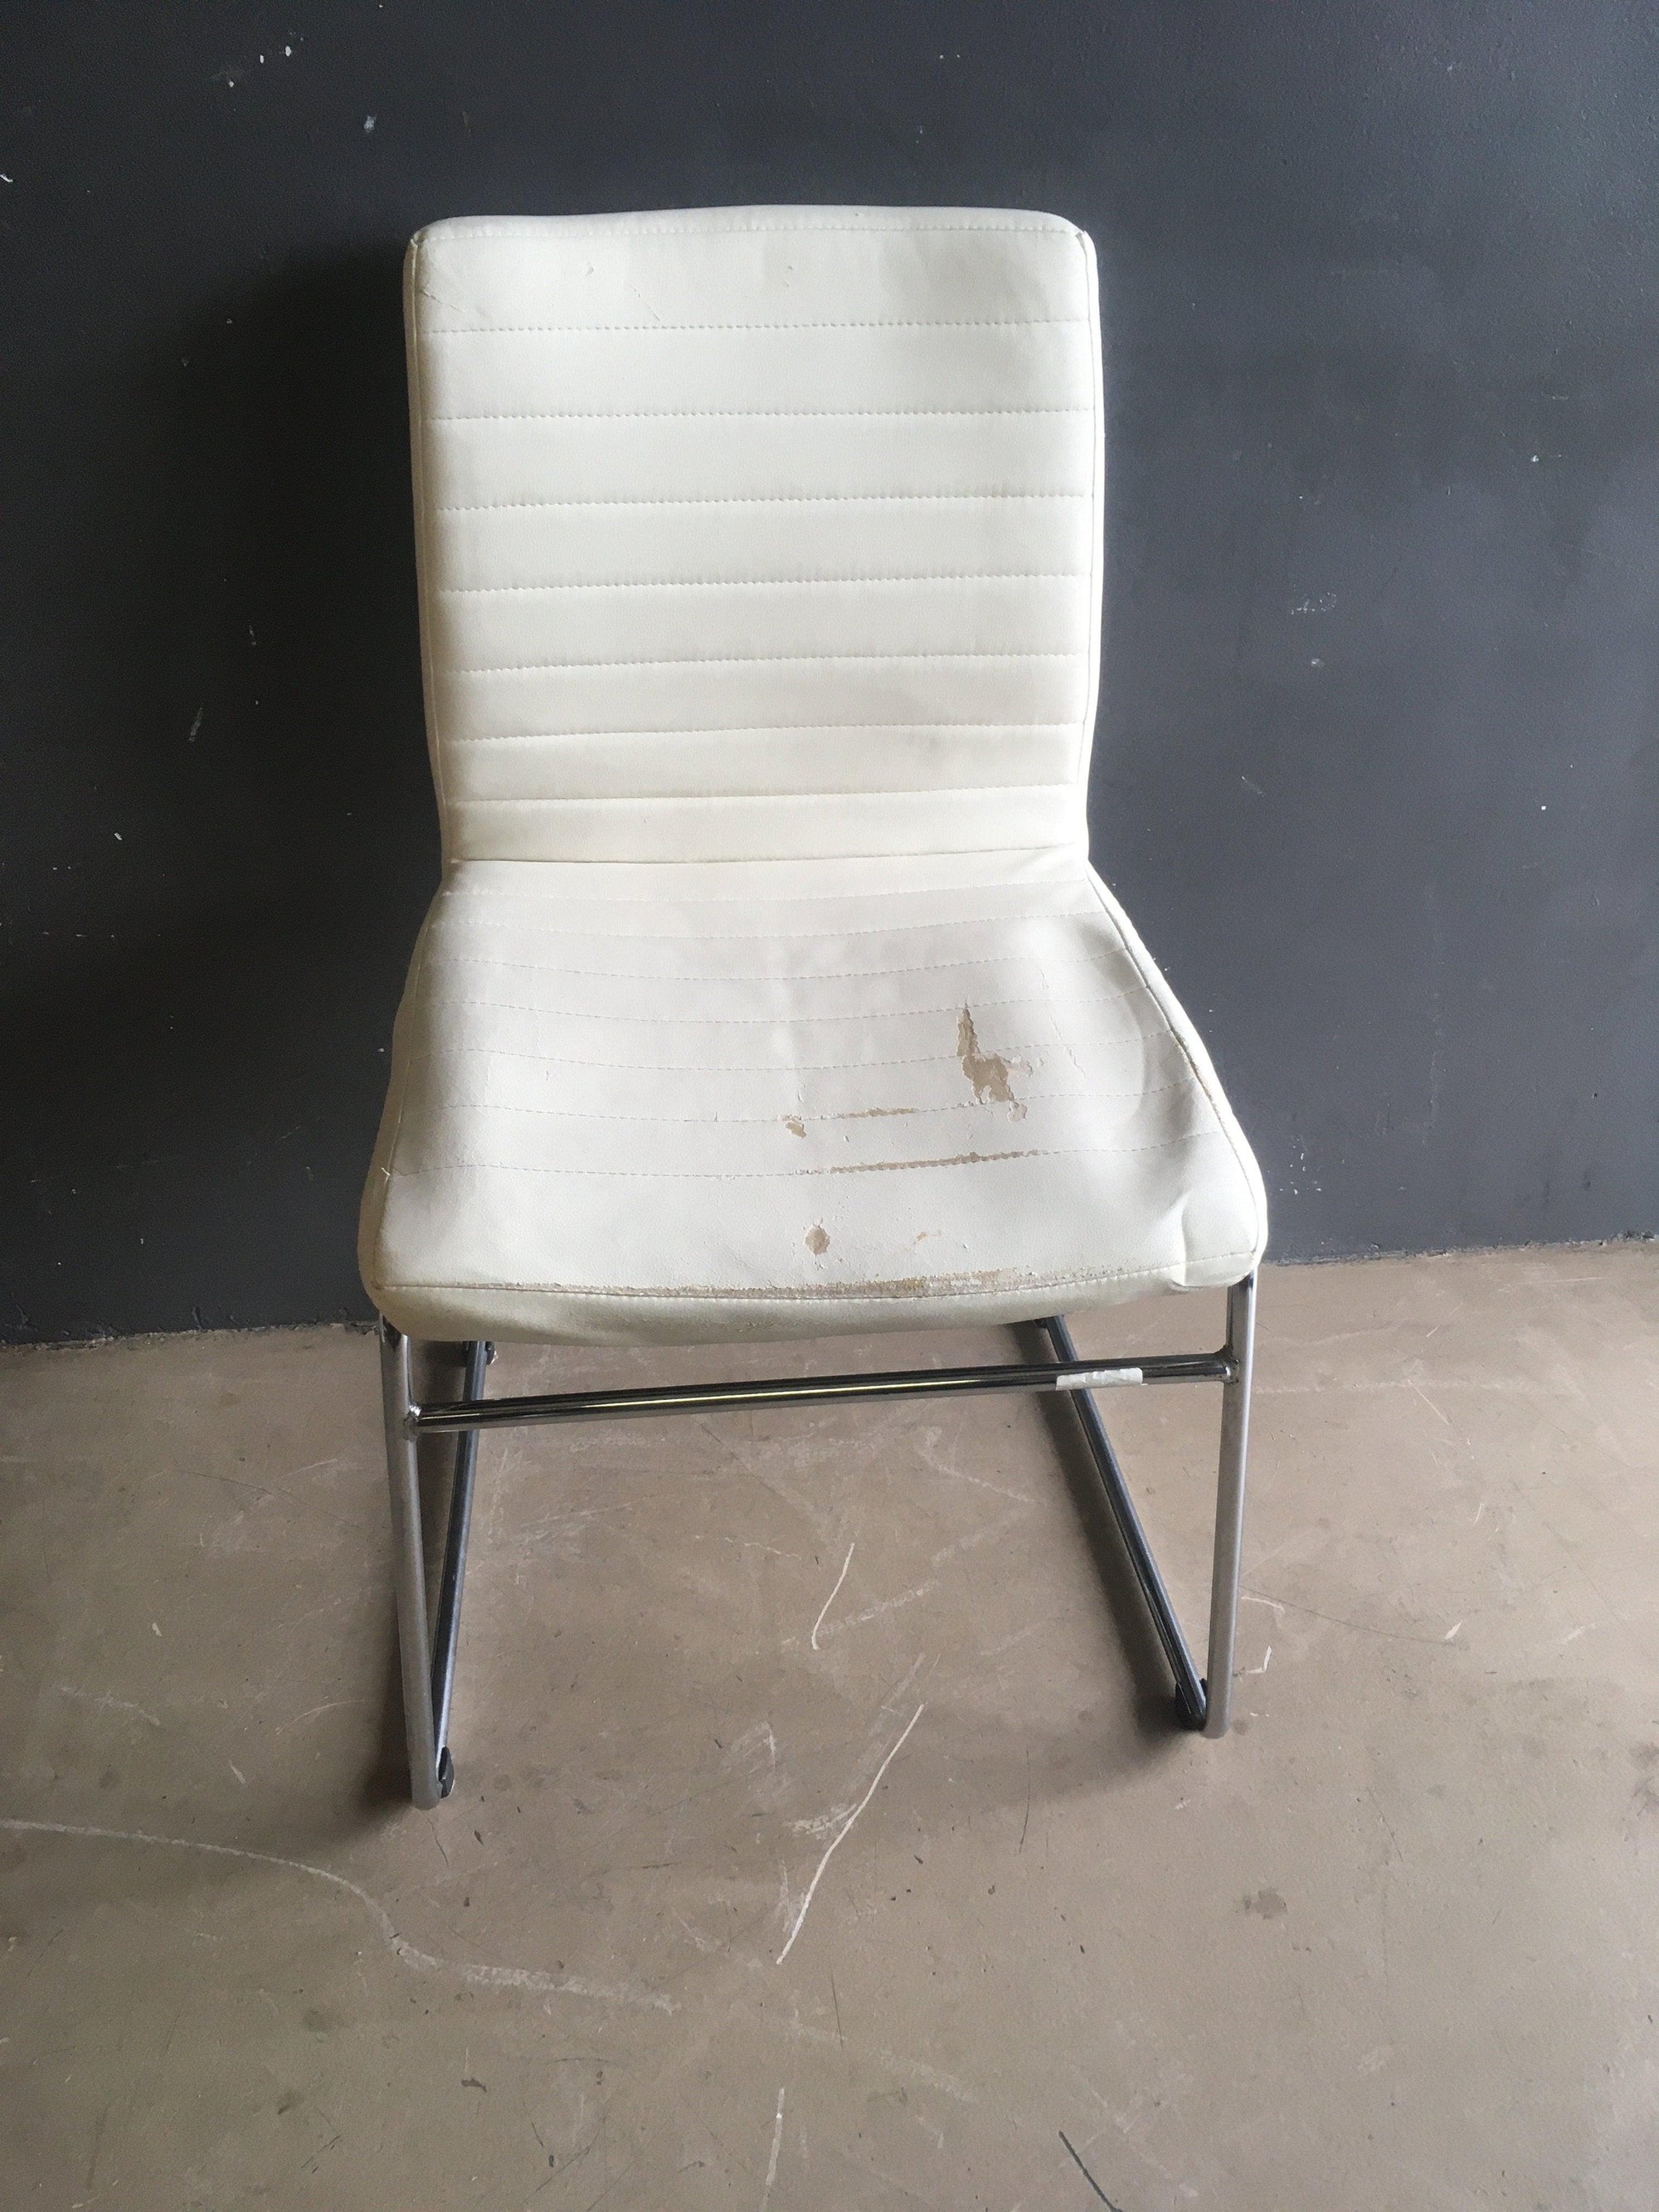 White padded chair - 2ndhandwarehouse.com